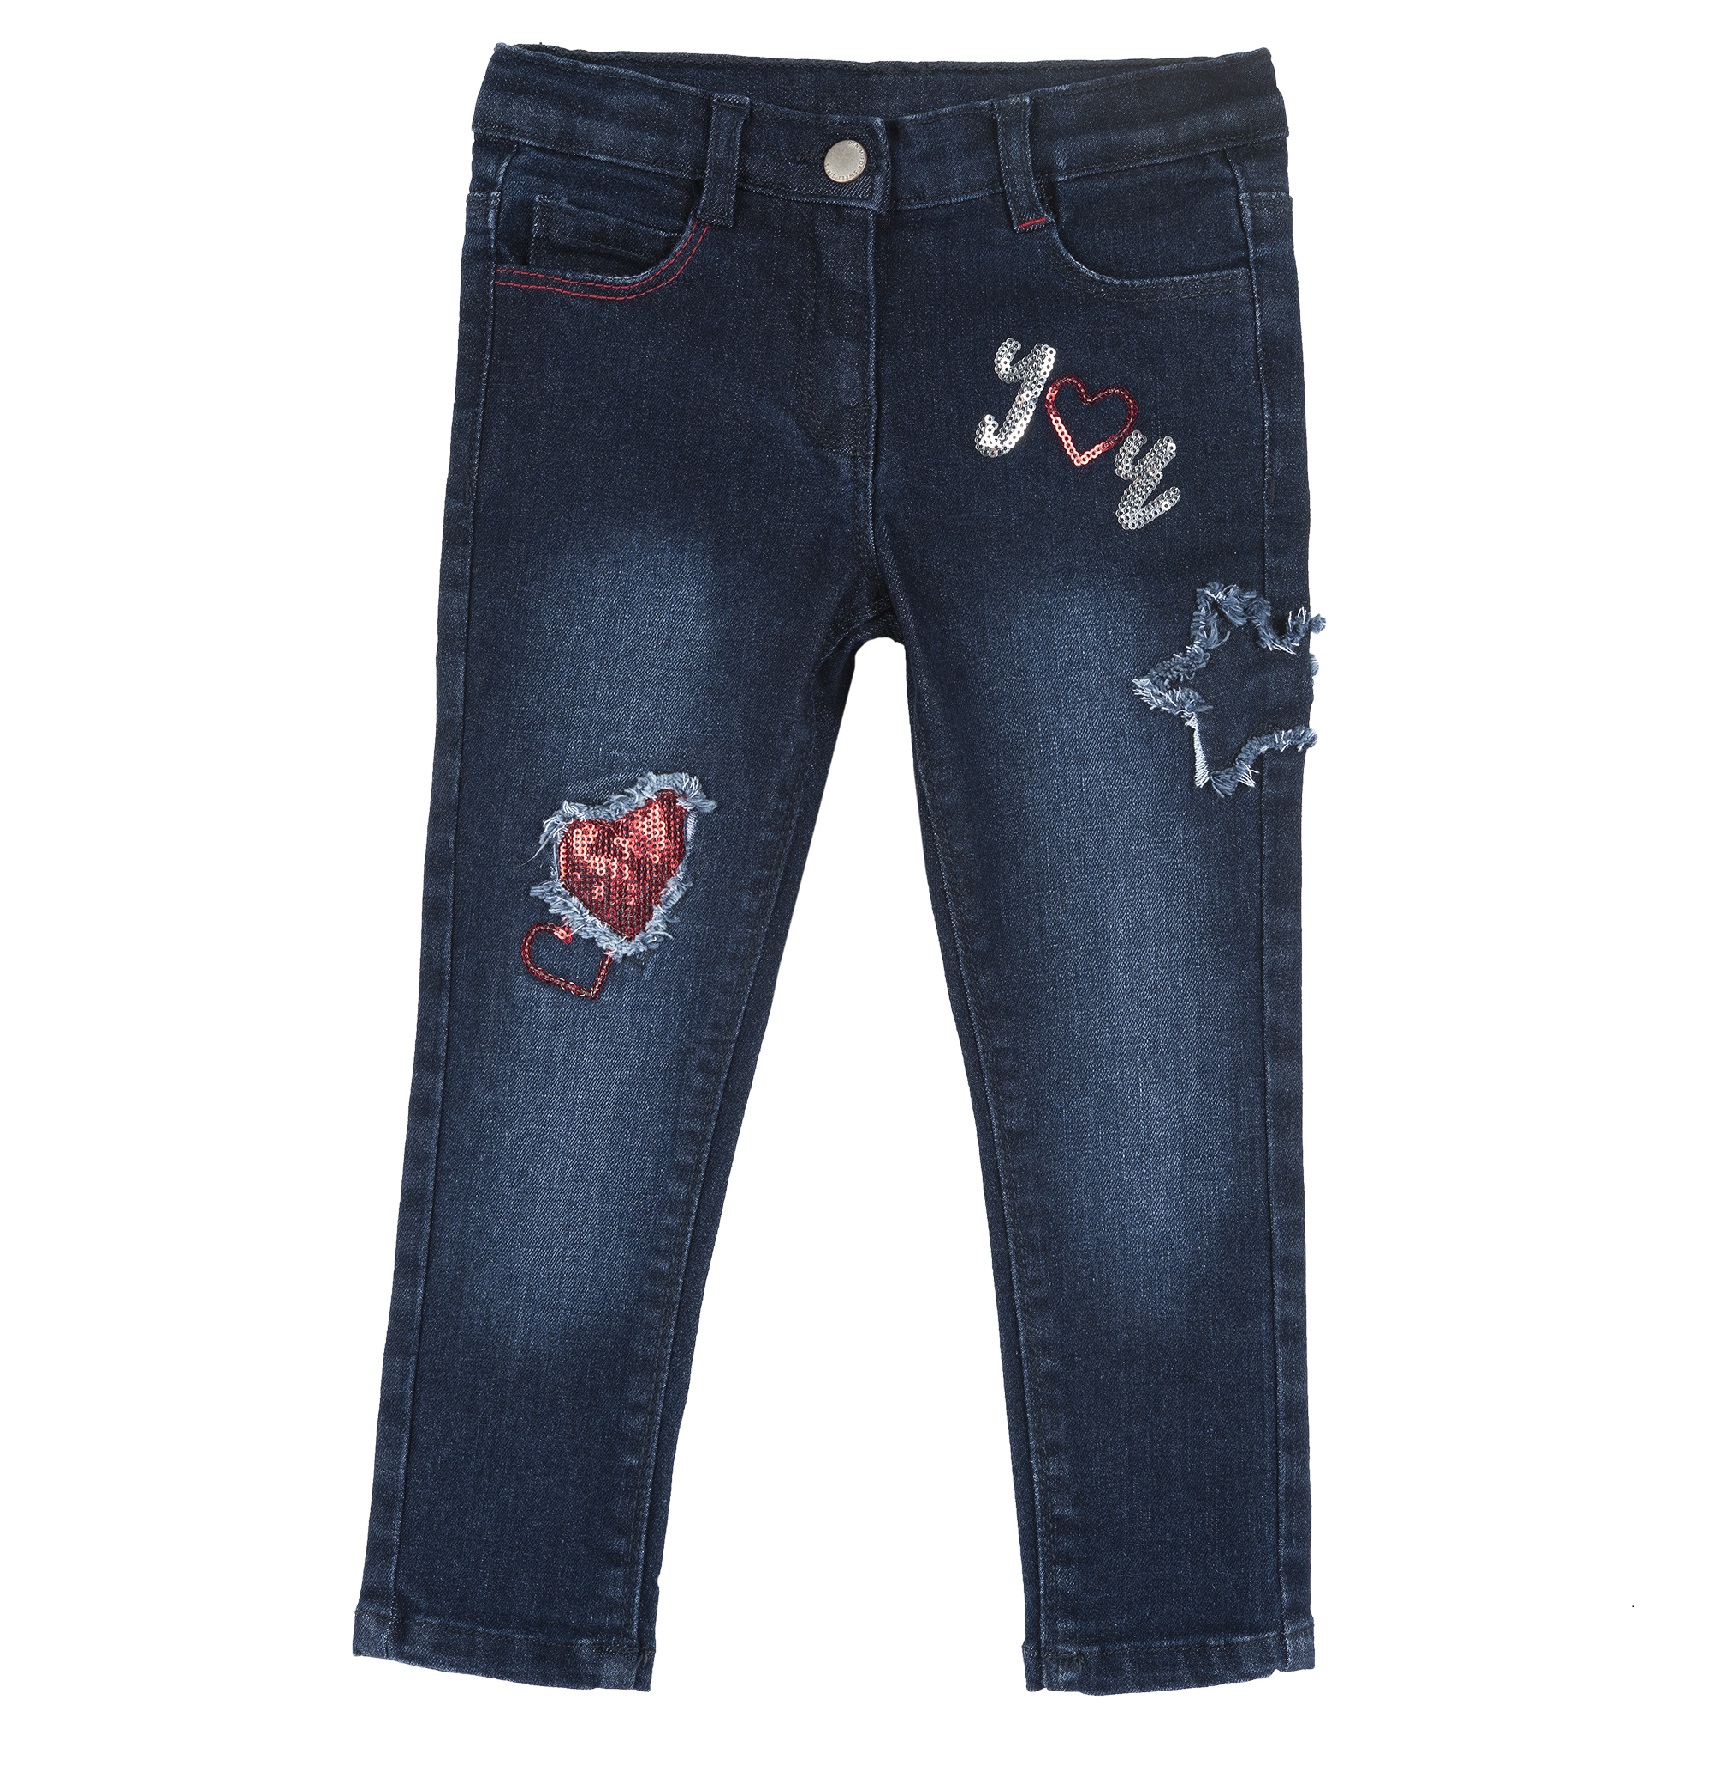 Pantaloni Lungi Copii Chicco, 08582-61mc, Albastru